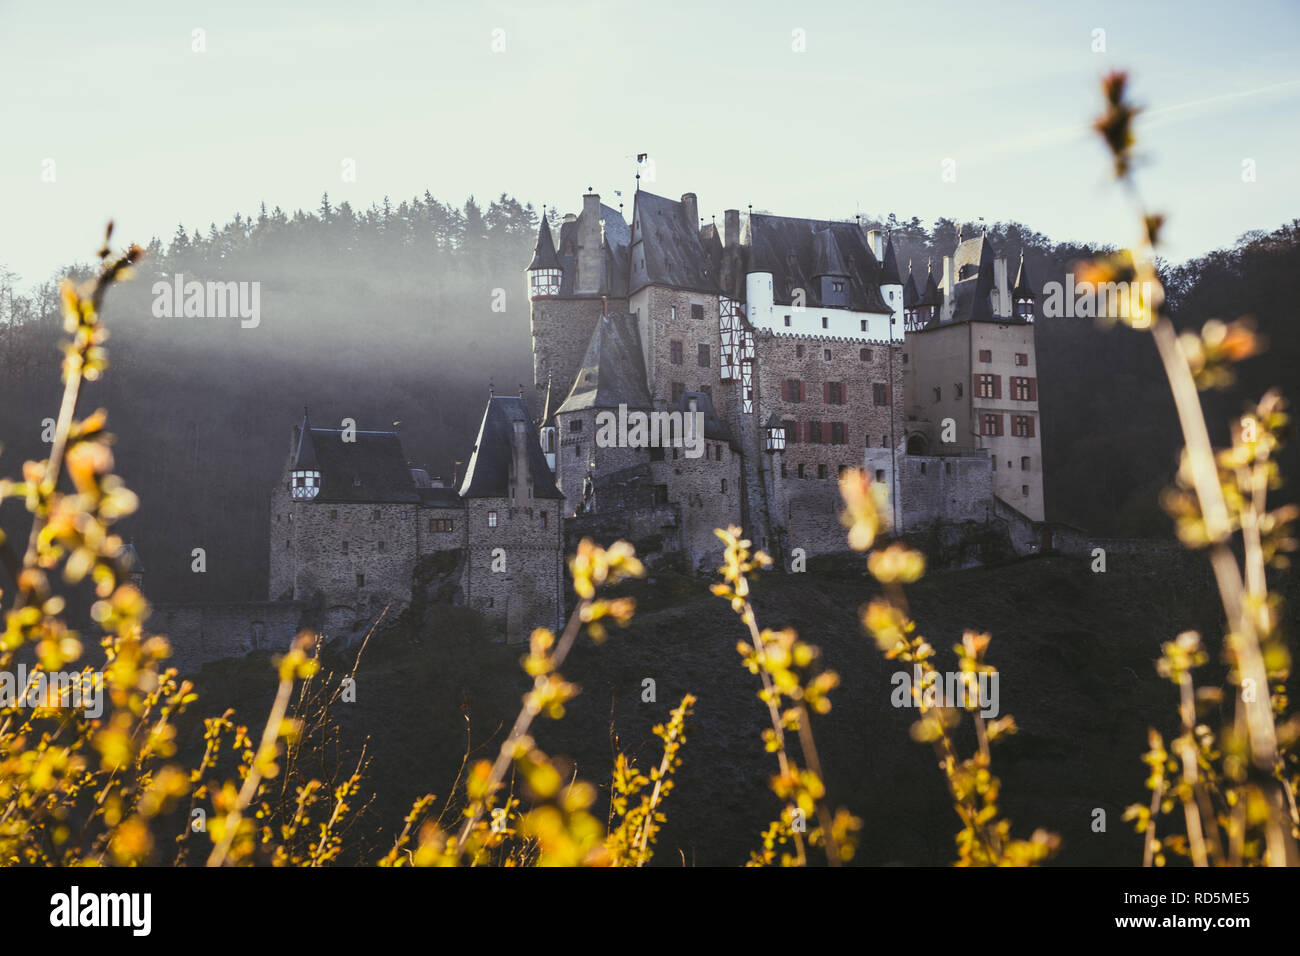 Schönen Blick auf die berühmte Burg Eltz im malerischen golden Morgen bei Sonnenaufgang im Herbst, Wierschem, Rheinland-Pfalz, Deutschland Stockfoto